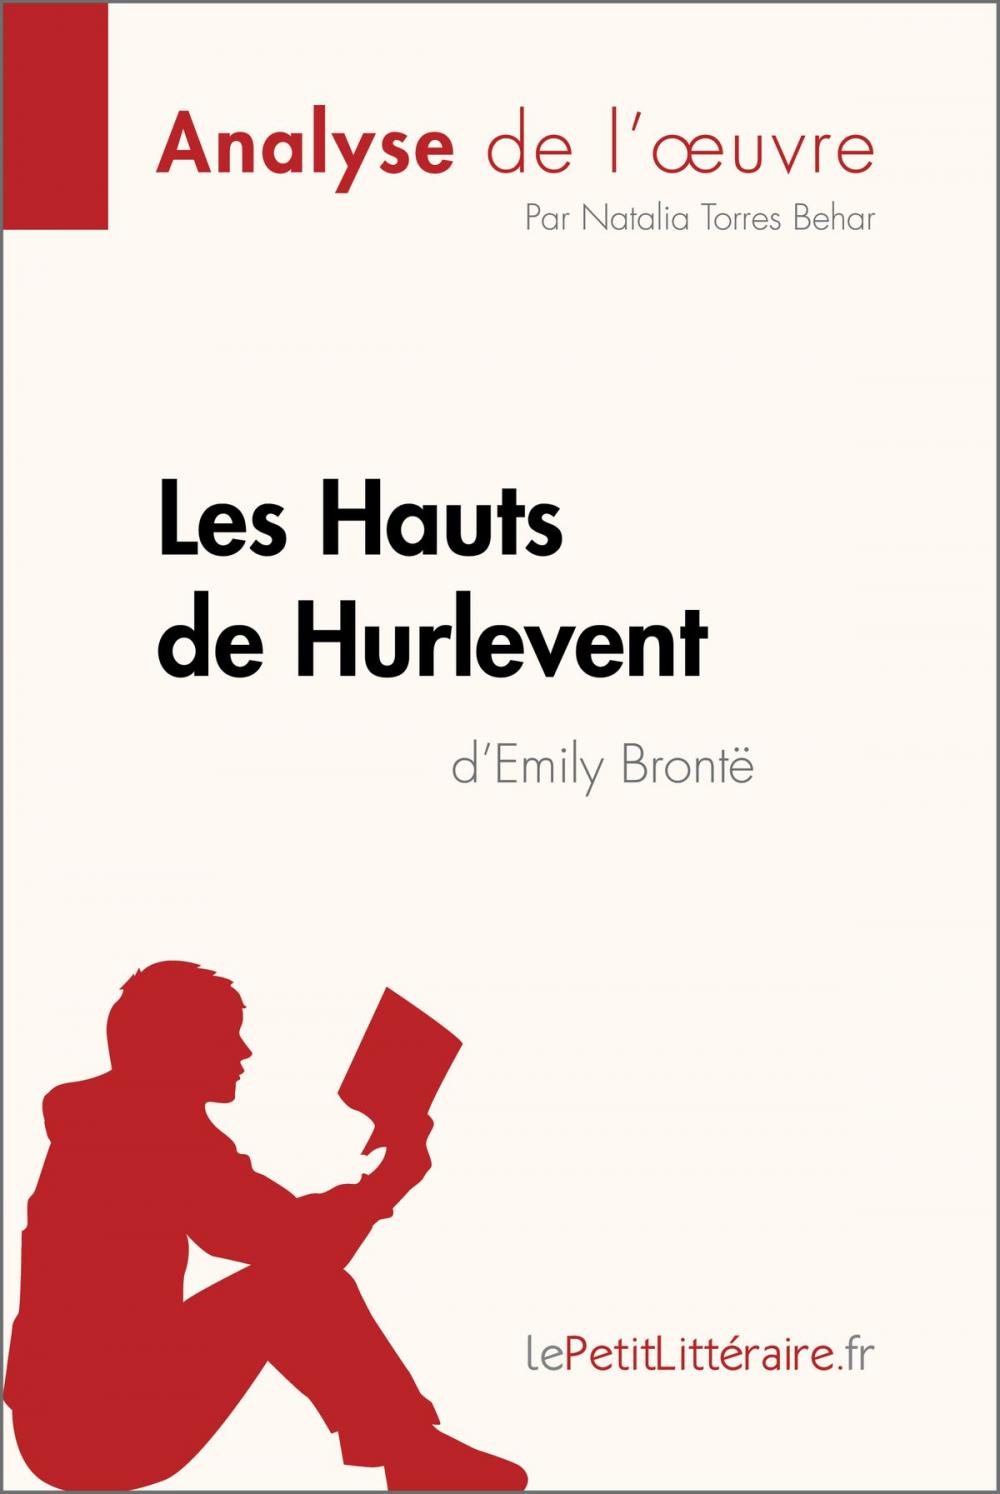 Big bigCover of Les Hauts de Hurlevent de Emily Brontë (Analyse de l'oeuvre)